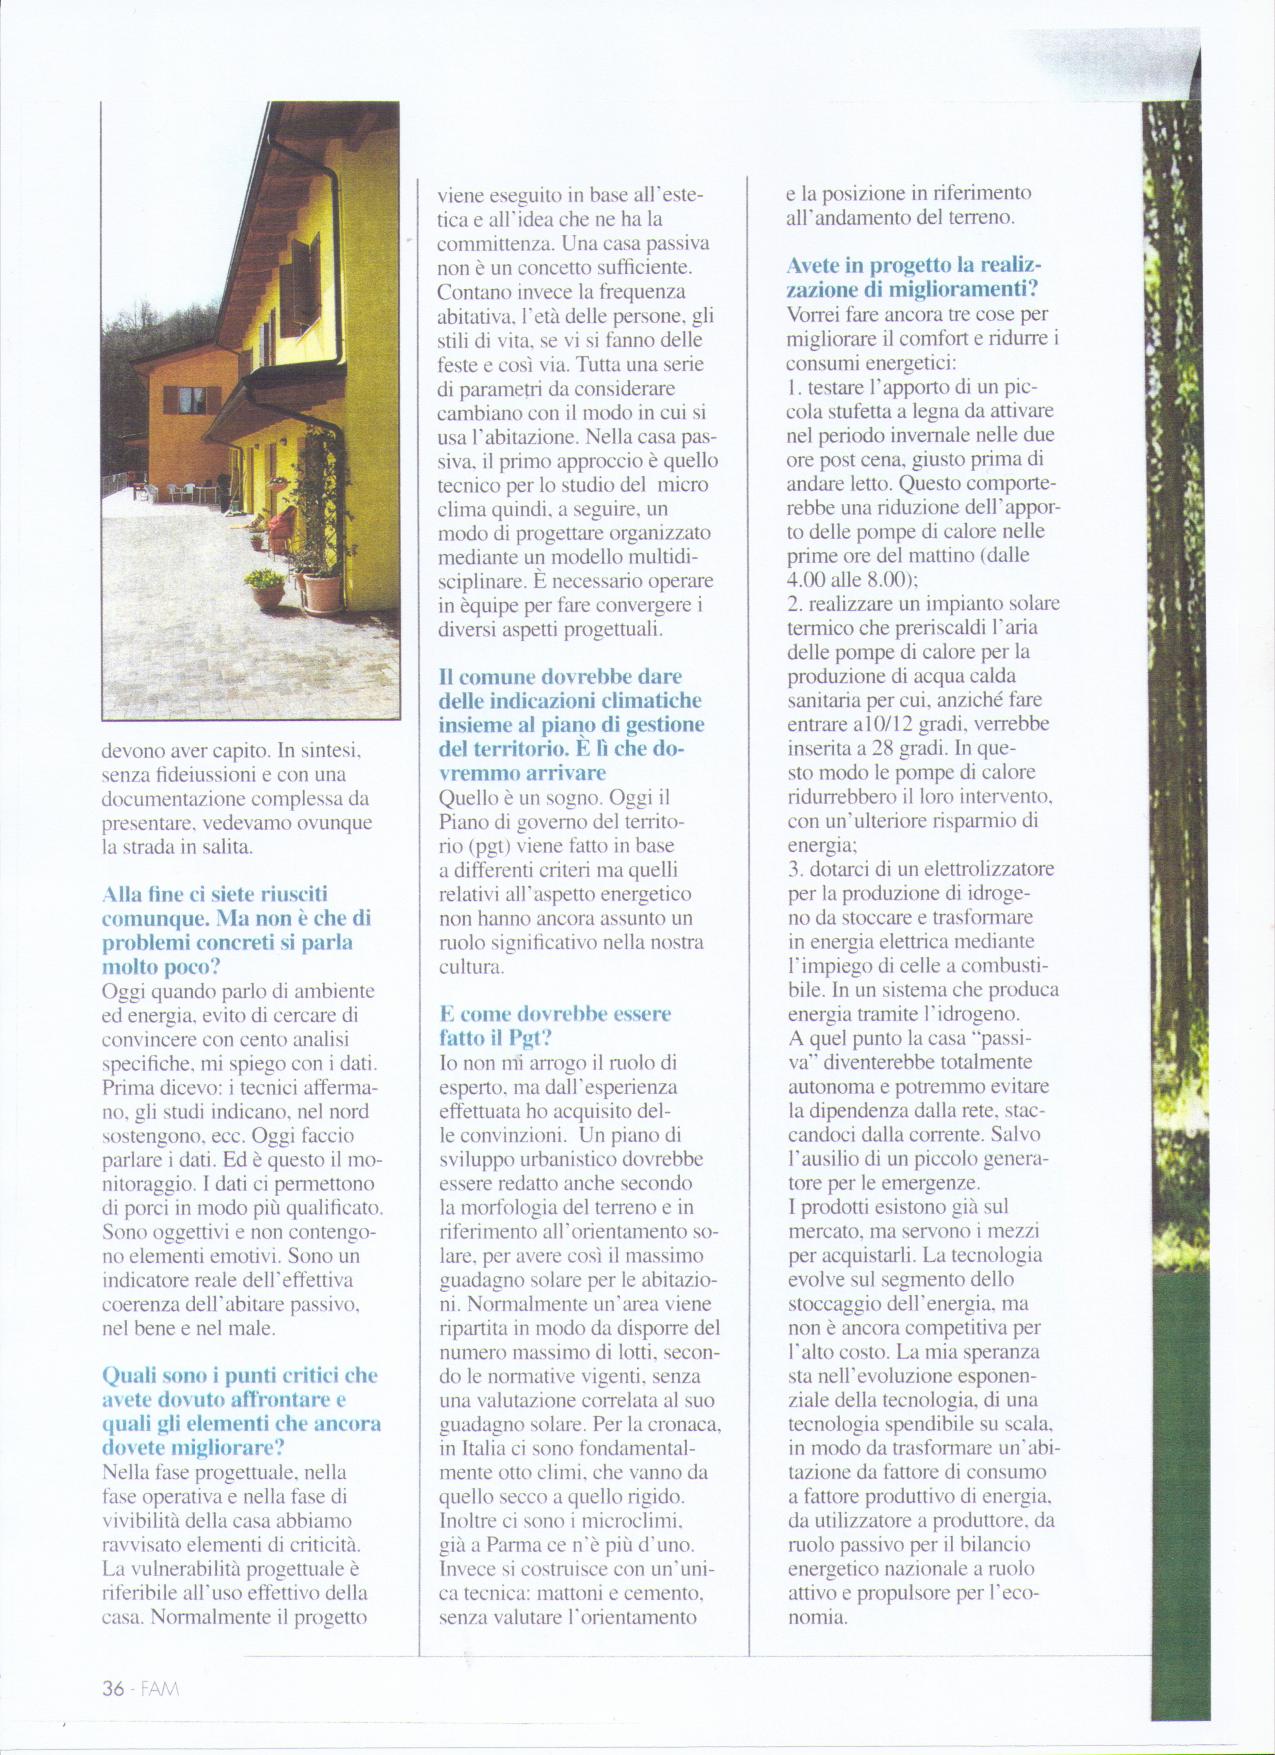 Fare Ambiente Magazine 9